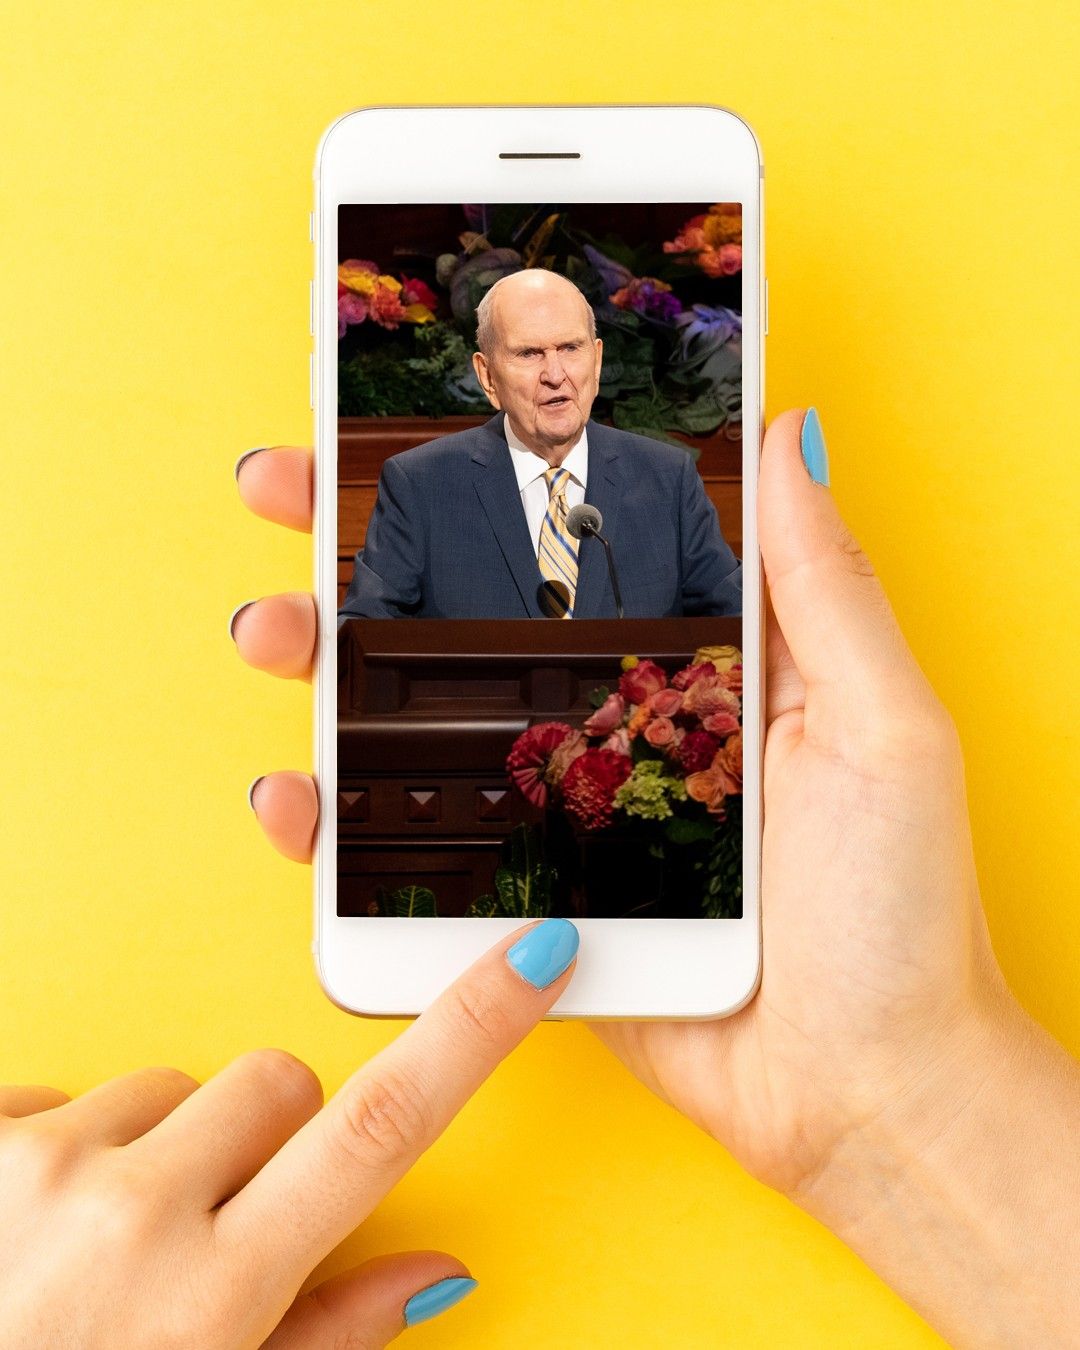 Téléphone portable versus Livre de Mormon: où sont nos priorités?